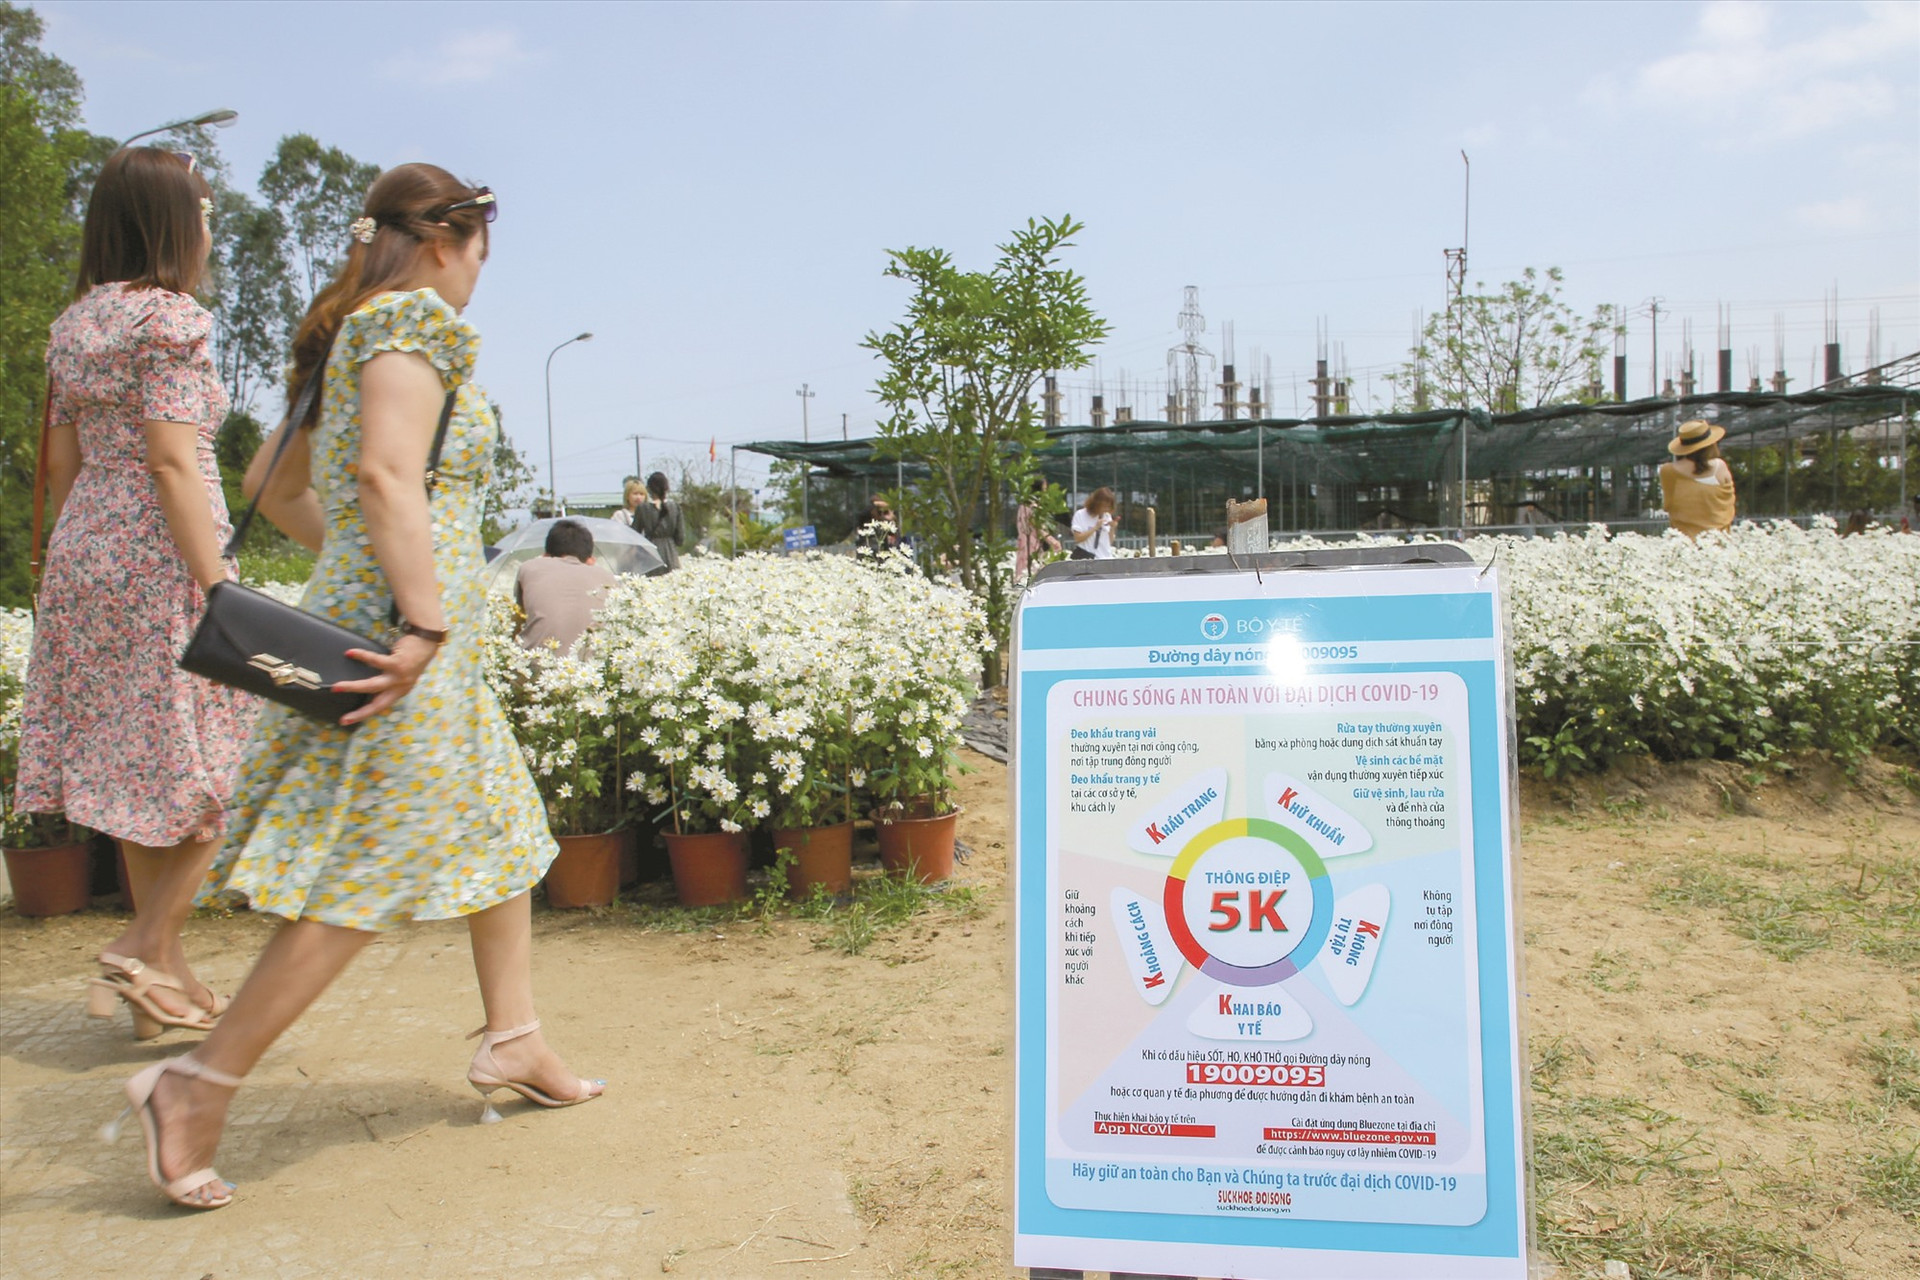 Tại vườn hoa đặt biển tuyên truyền thông điệp “5K” của Bộ Y tế về phòng chống dịch Covid-19. Khách khi vào cổng, được đo thân nhiệt, sát khuẩn tay.